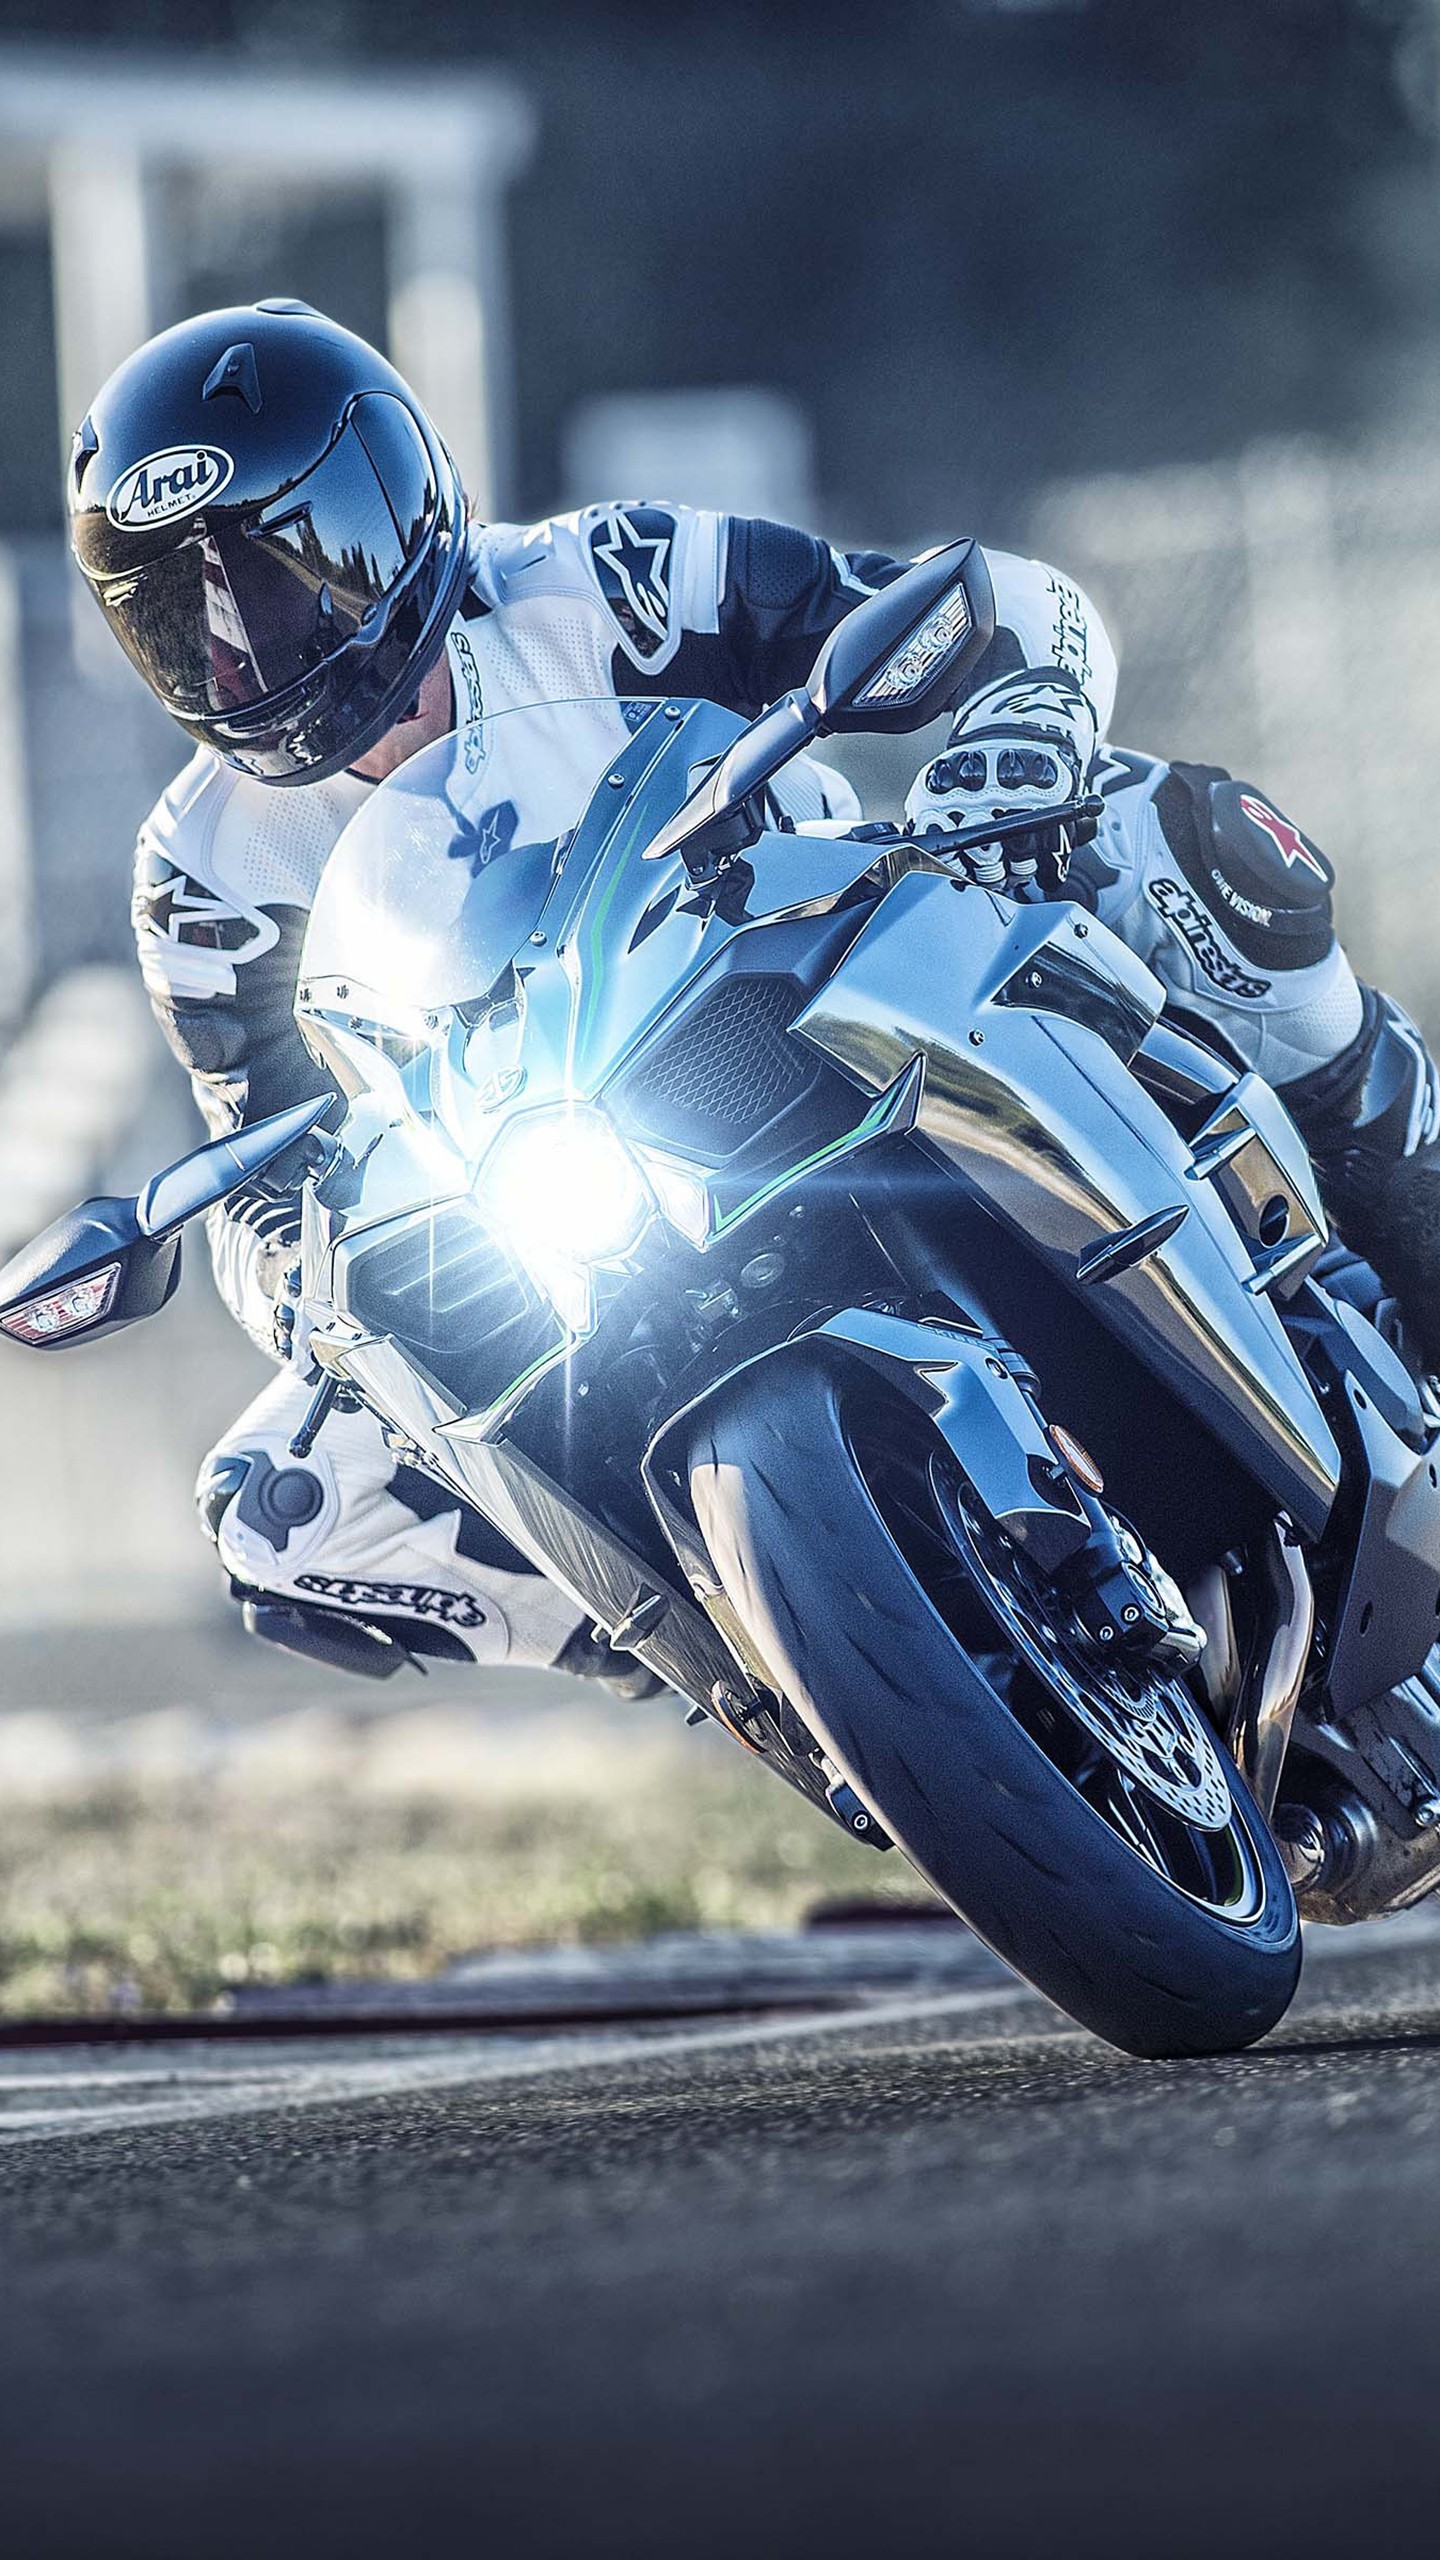 fonds d'écran de vélos hd pour android,moto,faire de la moto,course sur route,véhicule,superbike racing